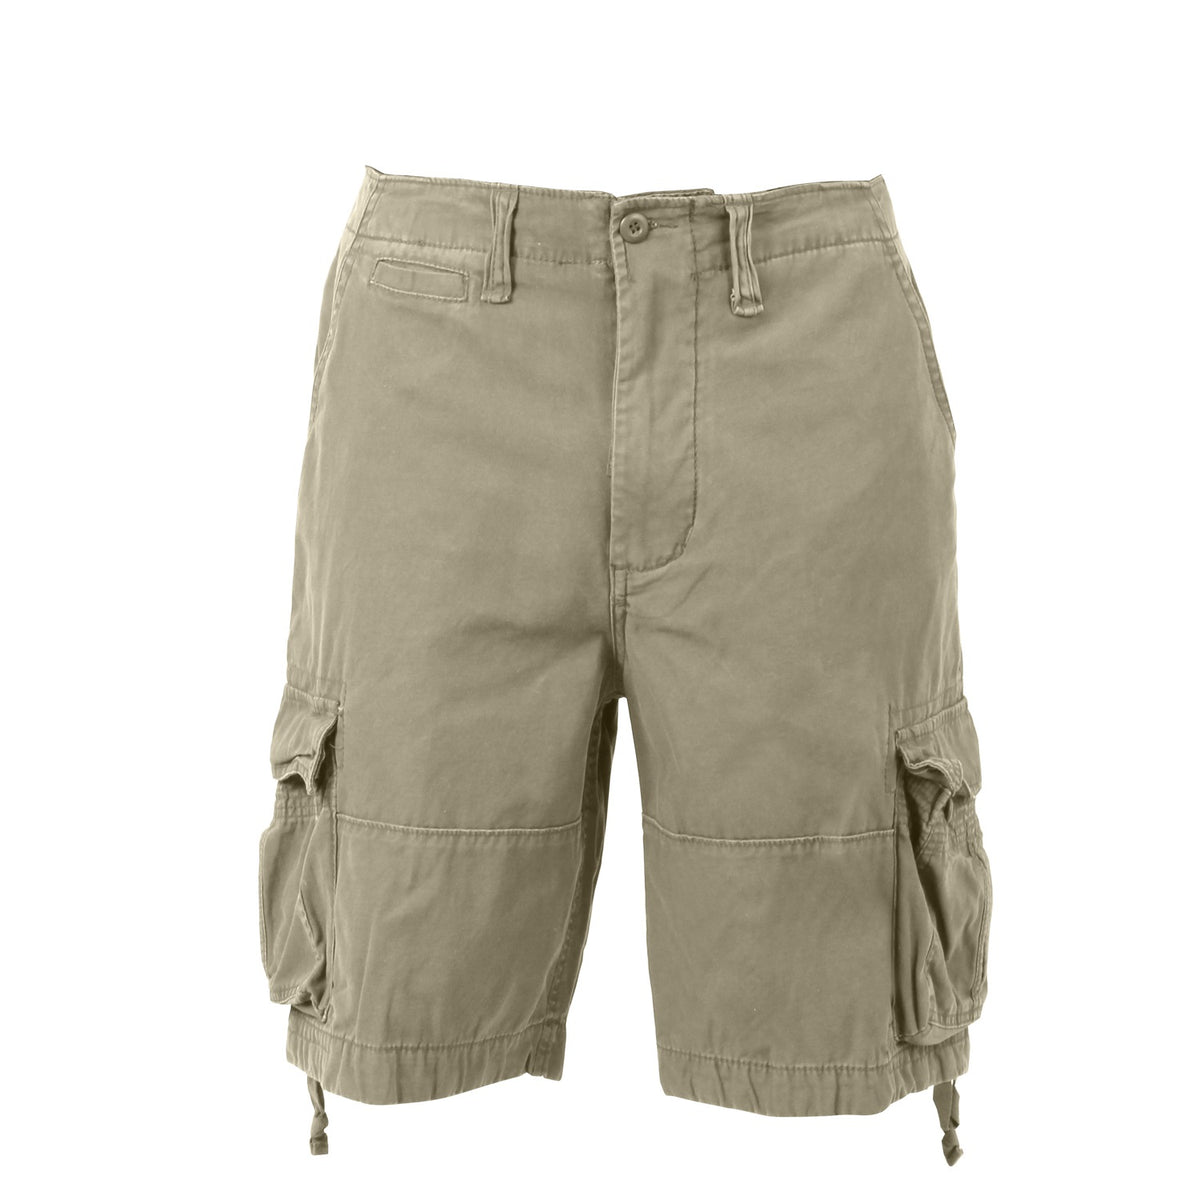 Rothco Vintage Infantry Utility Shorts - Khaki